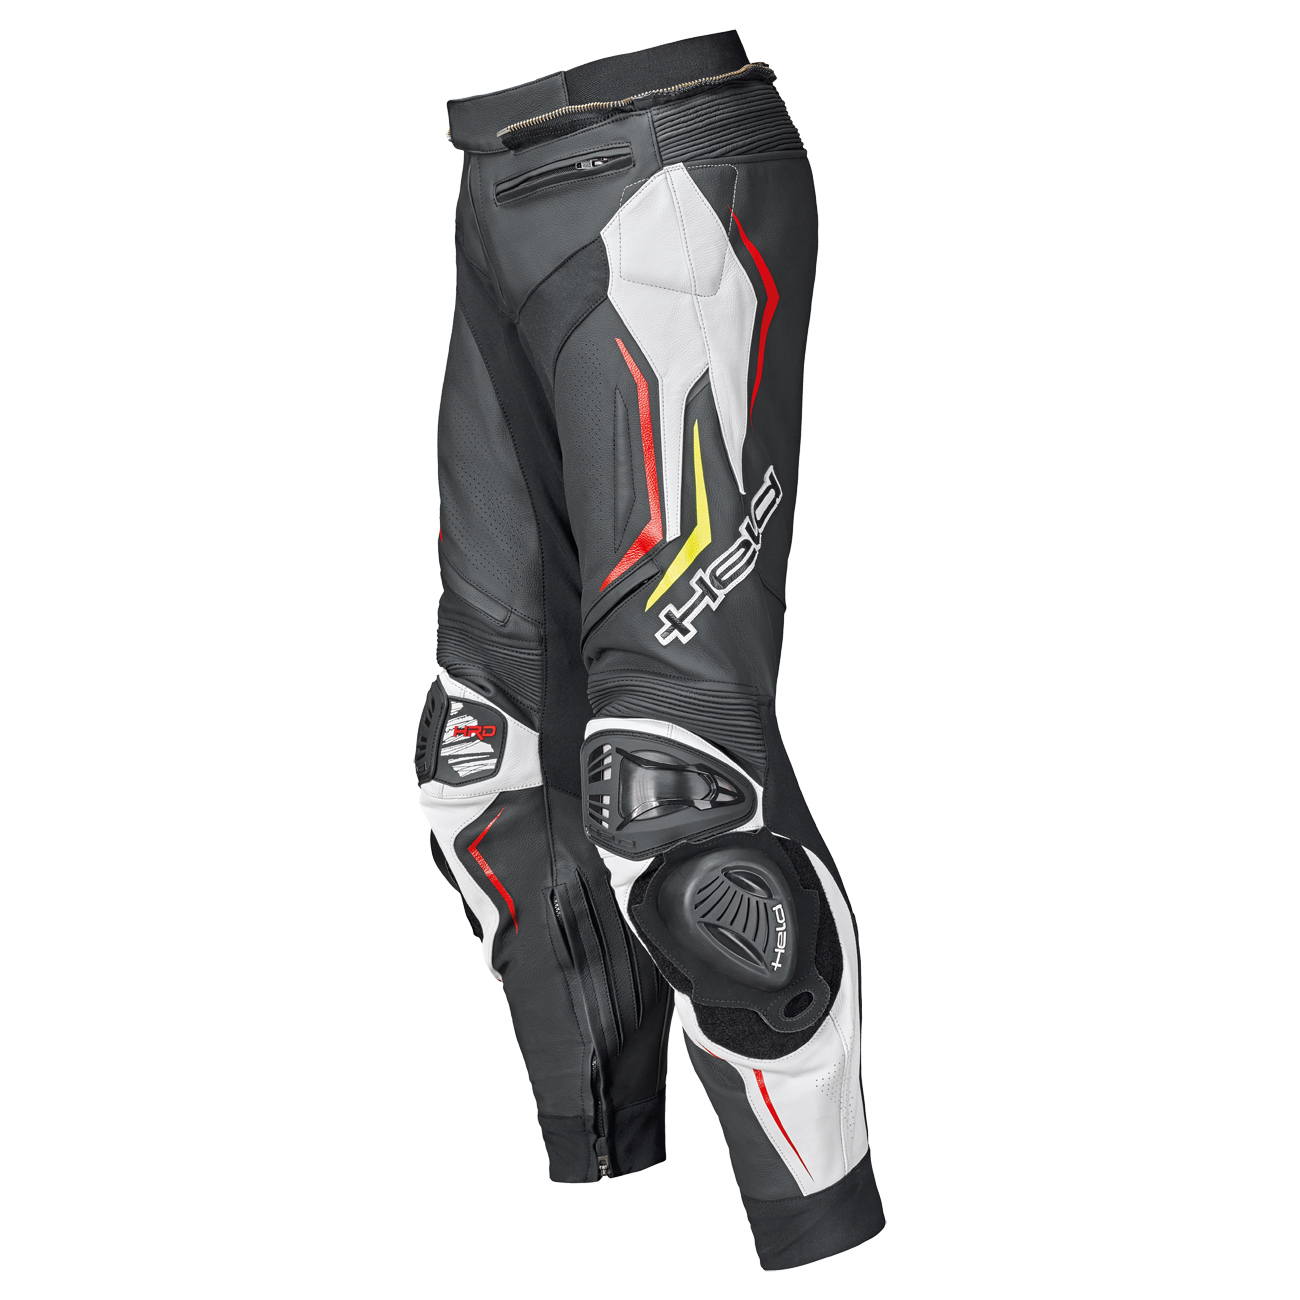 Grind II Sport pants